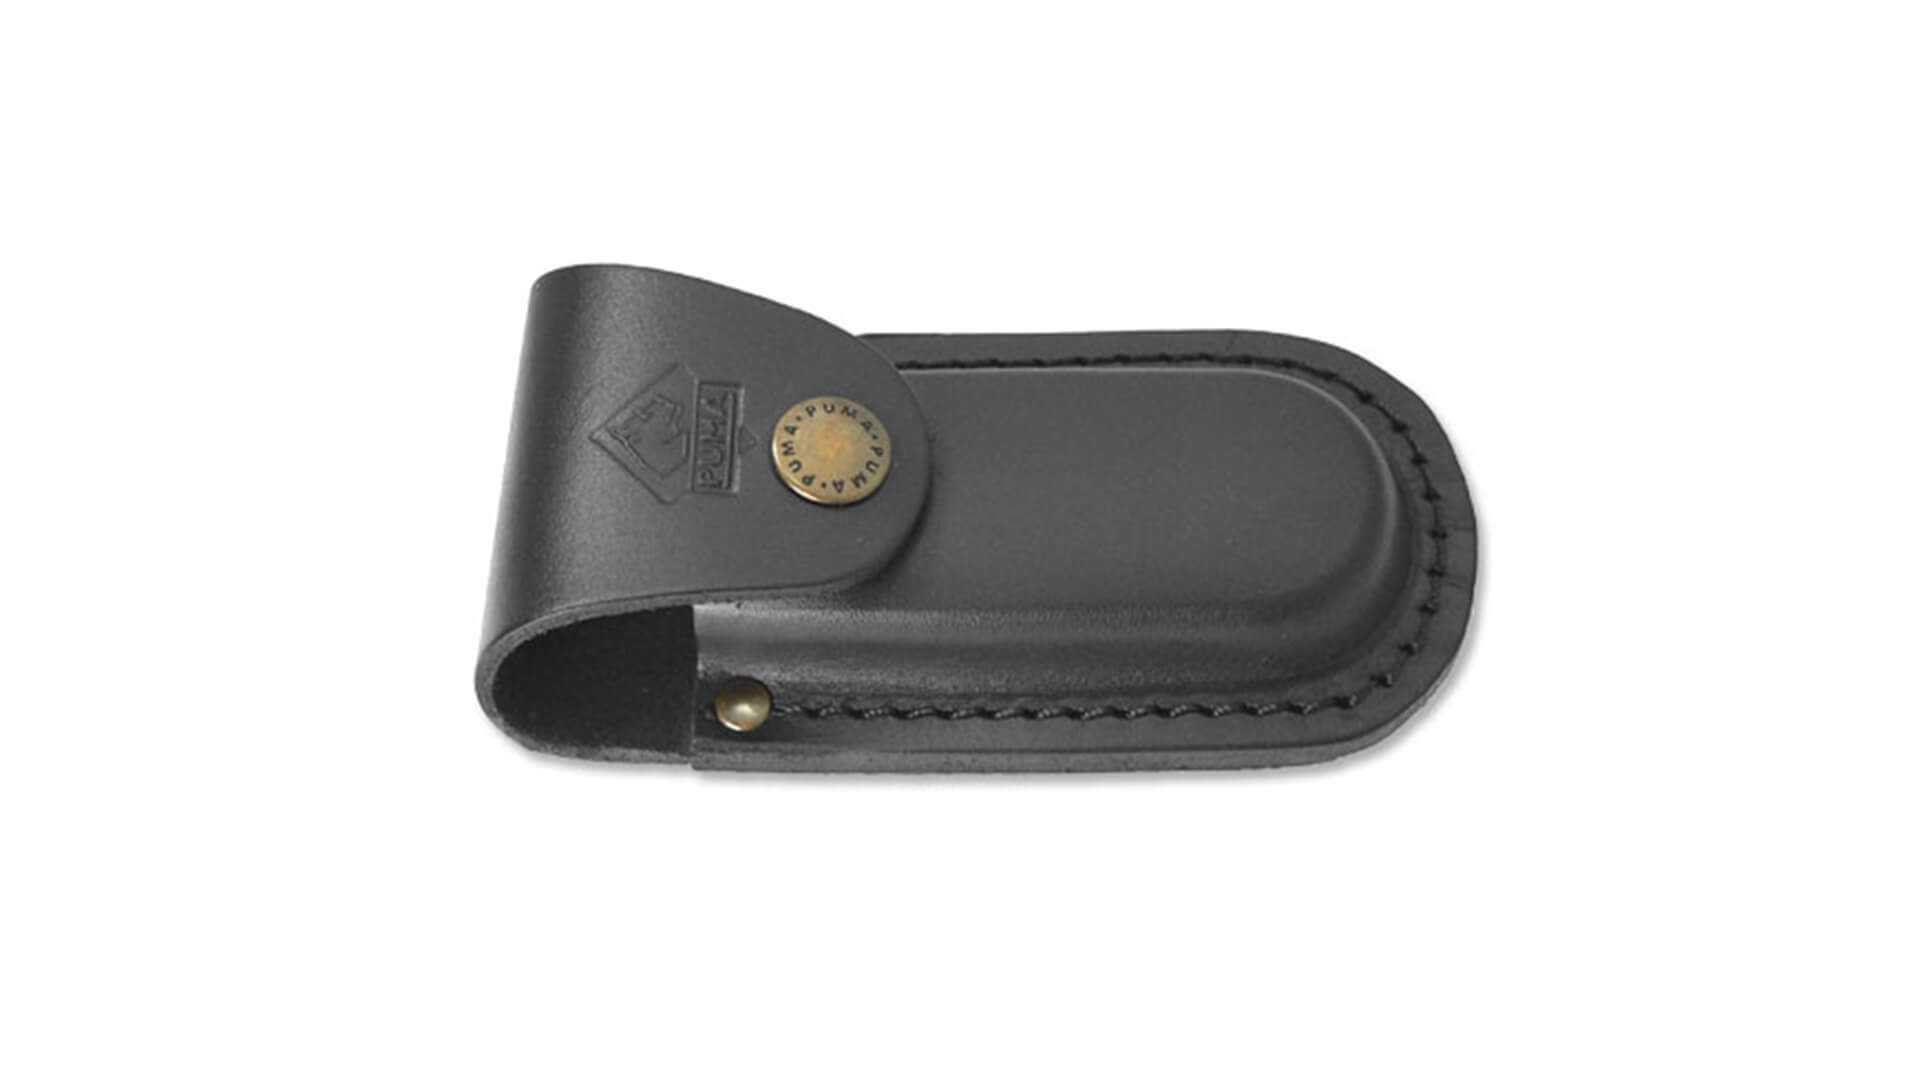 puma-belt-case-black-993556